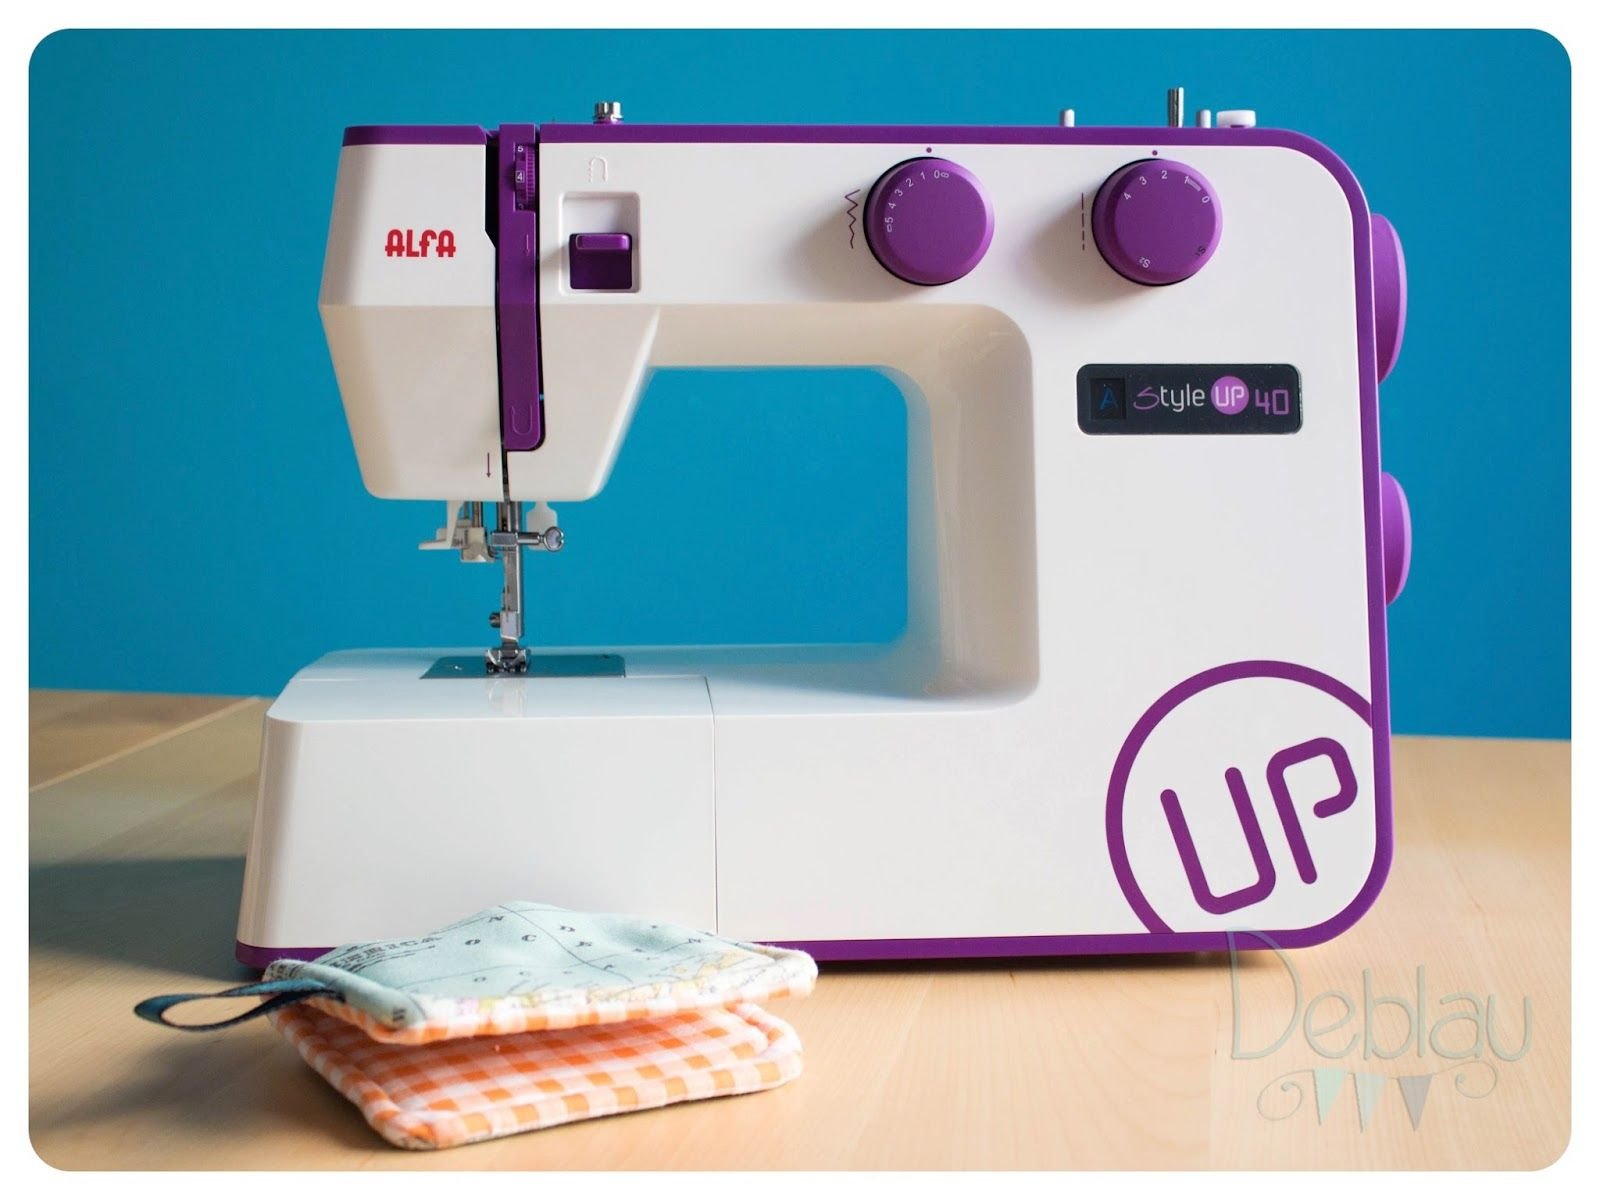 Casa Díaz - Las máquinas de coser Alfa Style Up 30 y 40